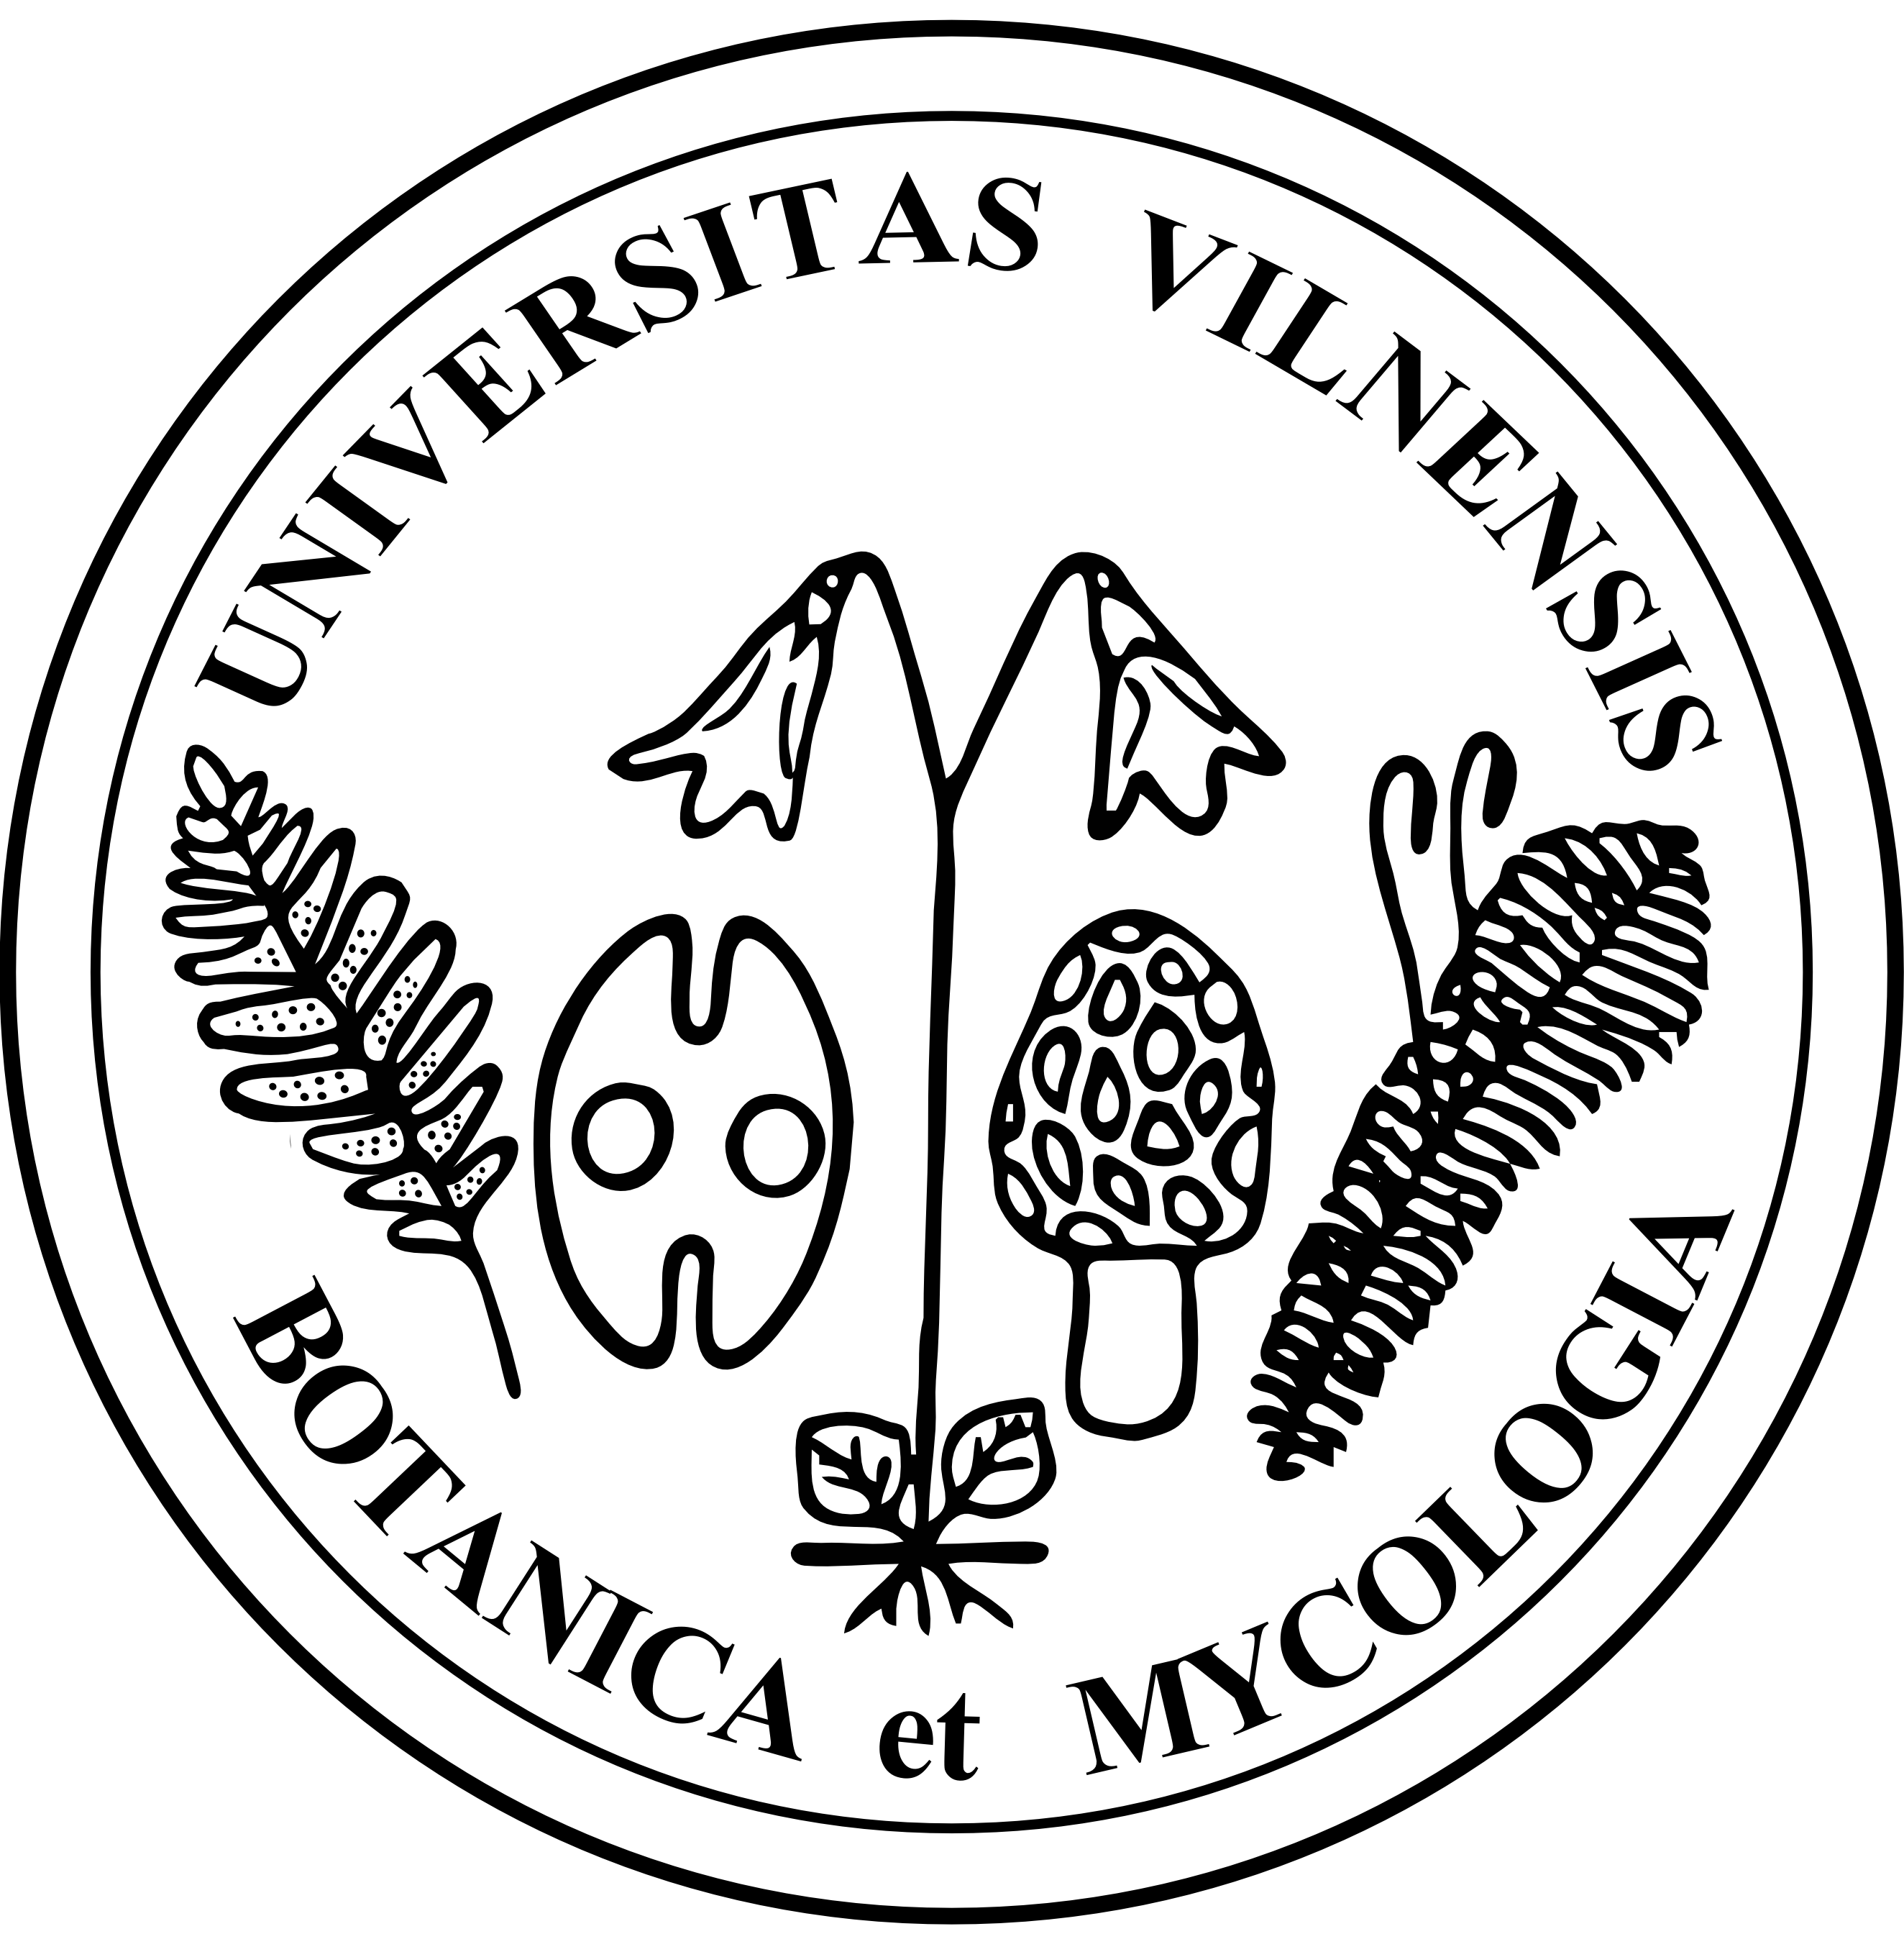 Botanica Mycologia logo Kalinauskaite Juzenas 2019